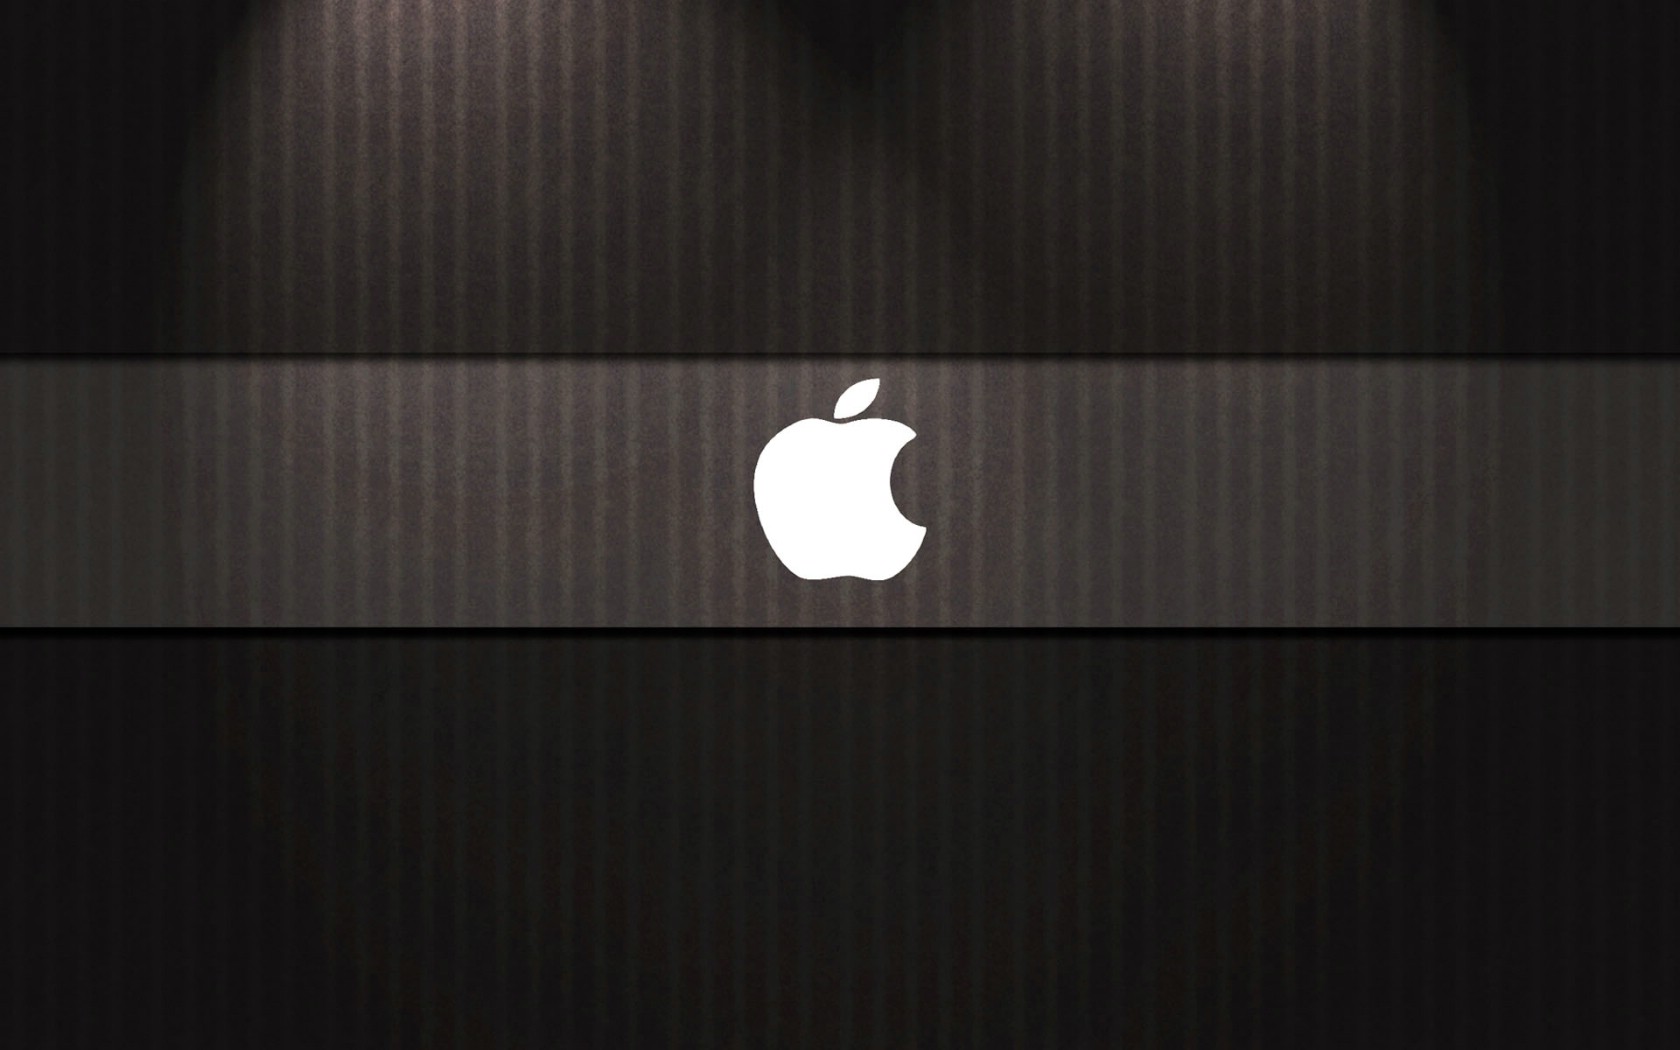 壁纸1680x1050Apple主题 49 7壁纸 Apple主题壁纸 Apple主题图片 Apple主题素材 系统壁纸 系统图库 系统图片素材桌面壁纸